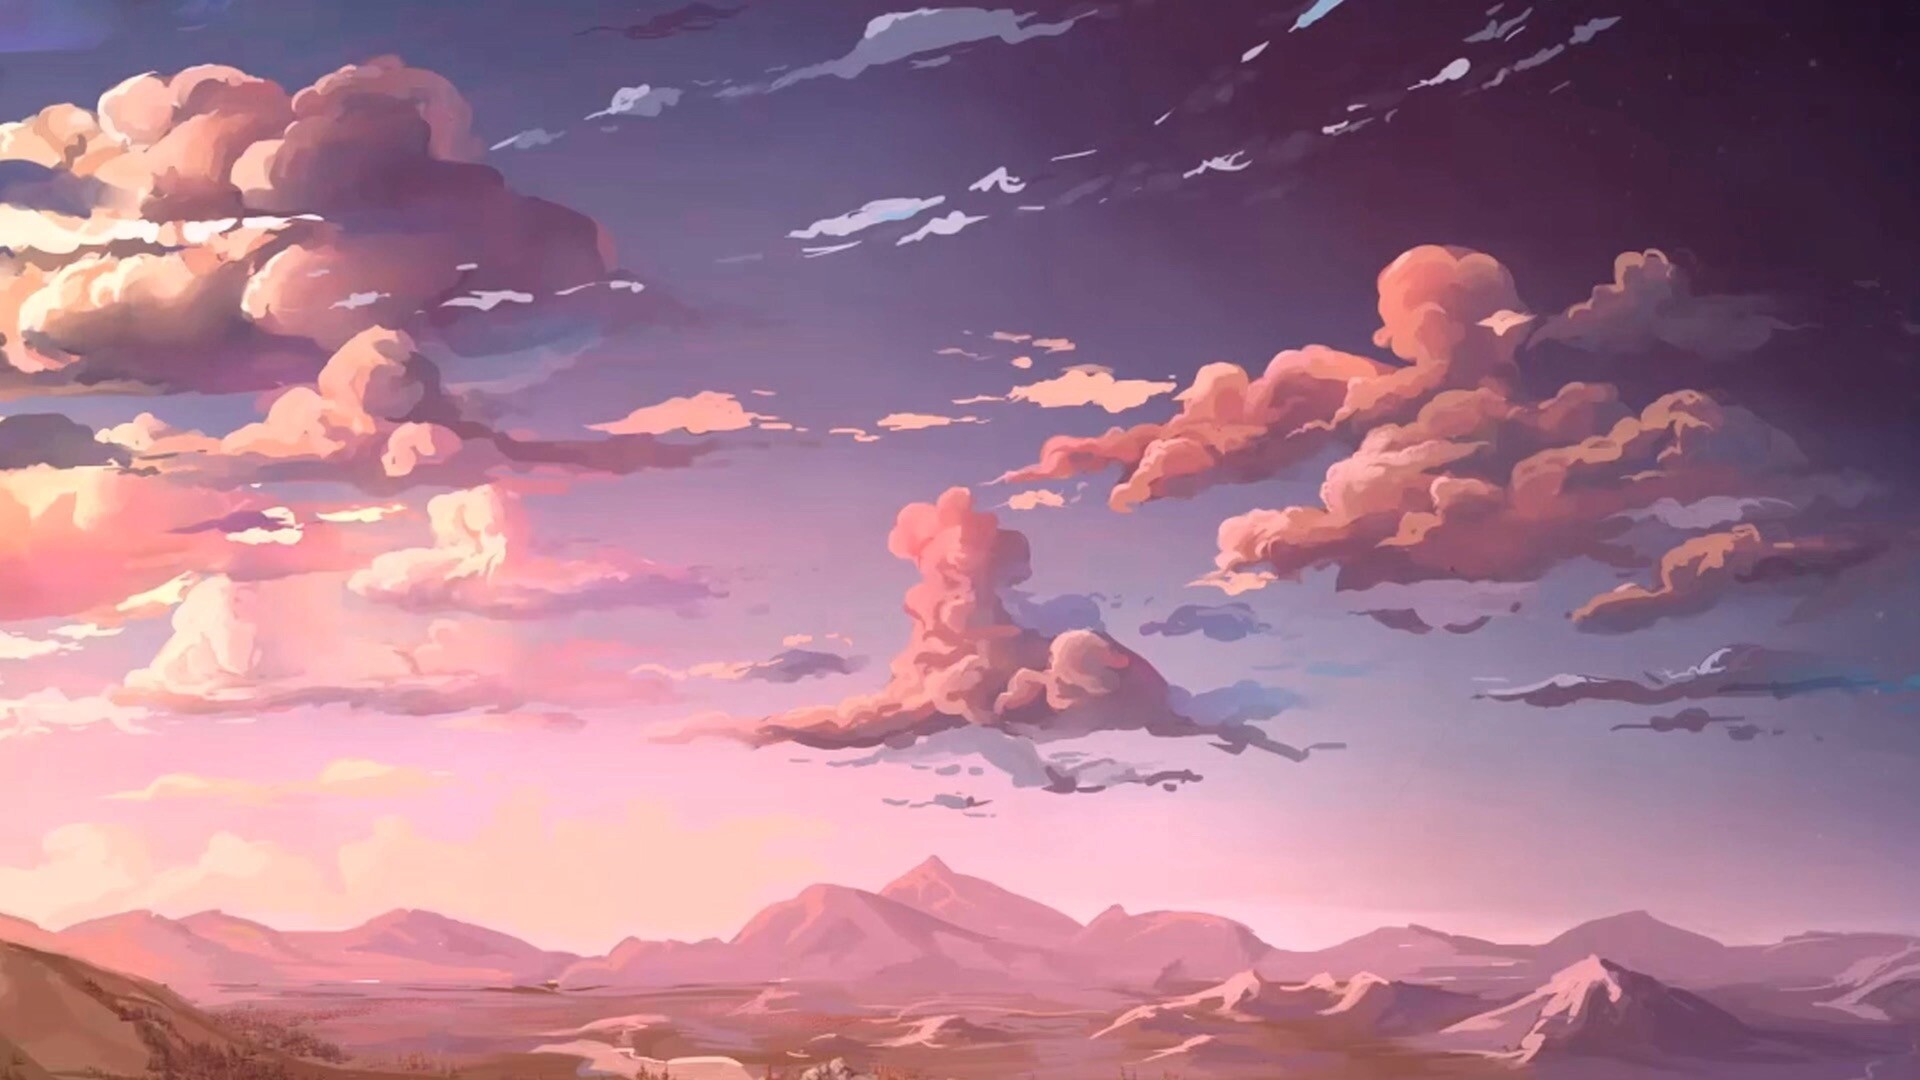 此壁纸为动漫画风,一天的描绘了日落晚霞的美丽风景,欢迎下载体验!